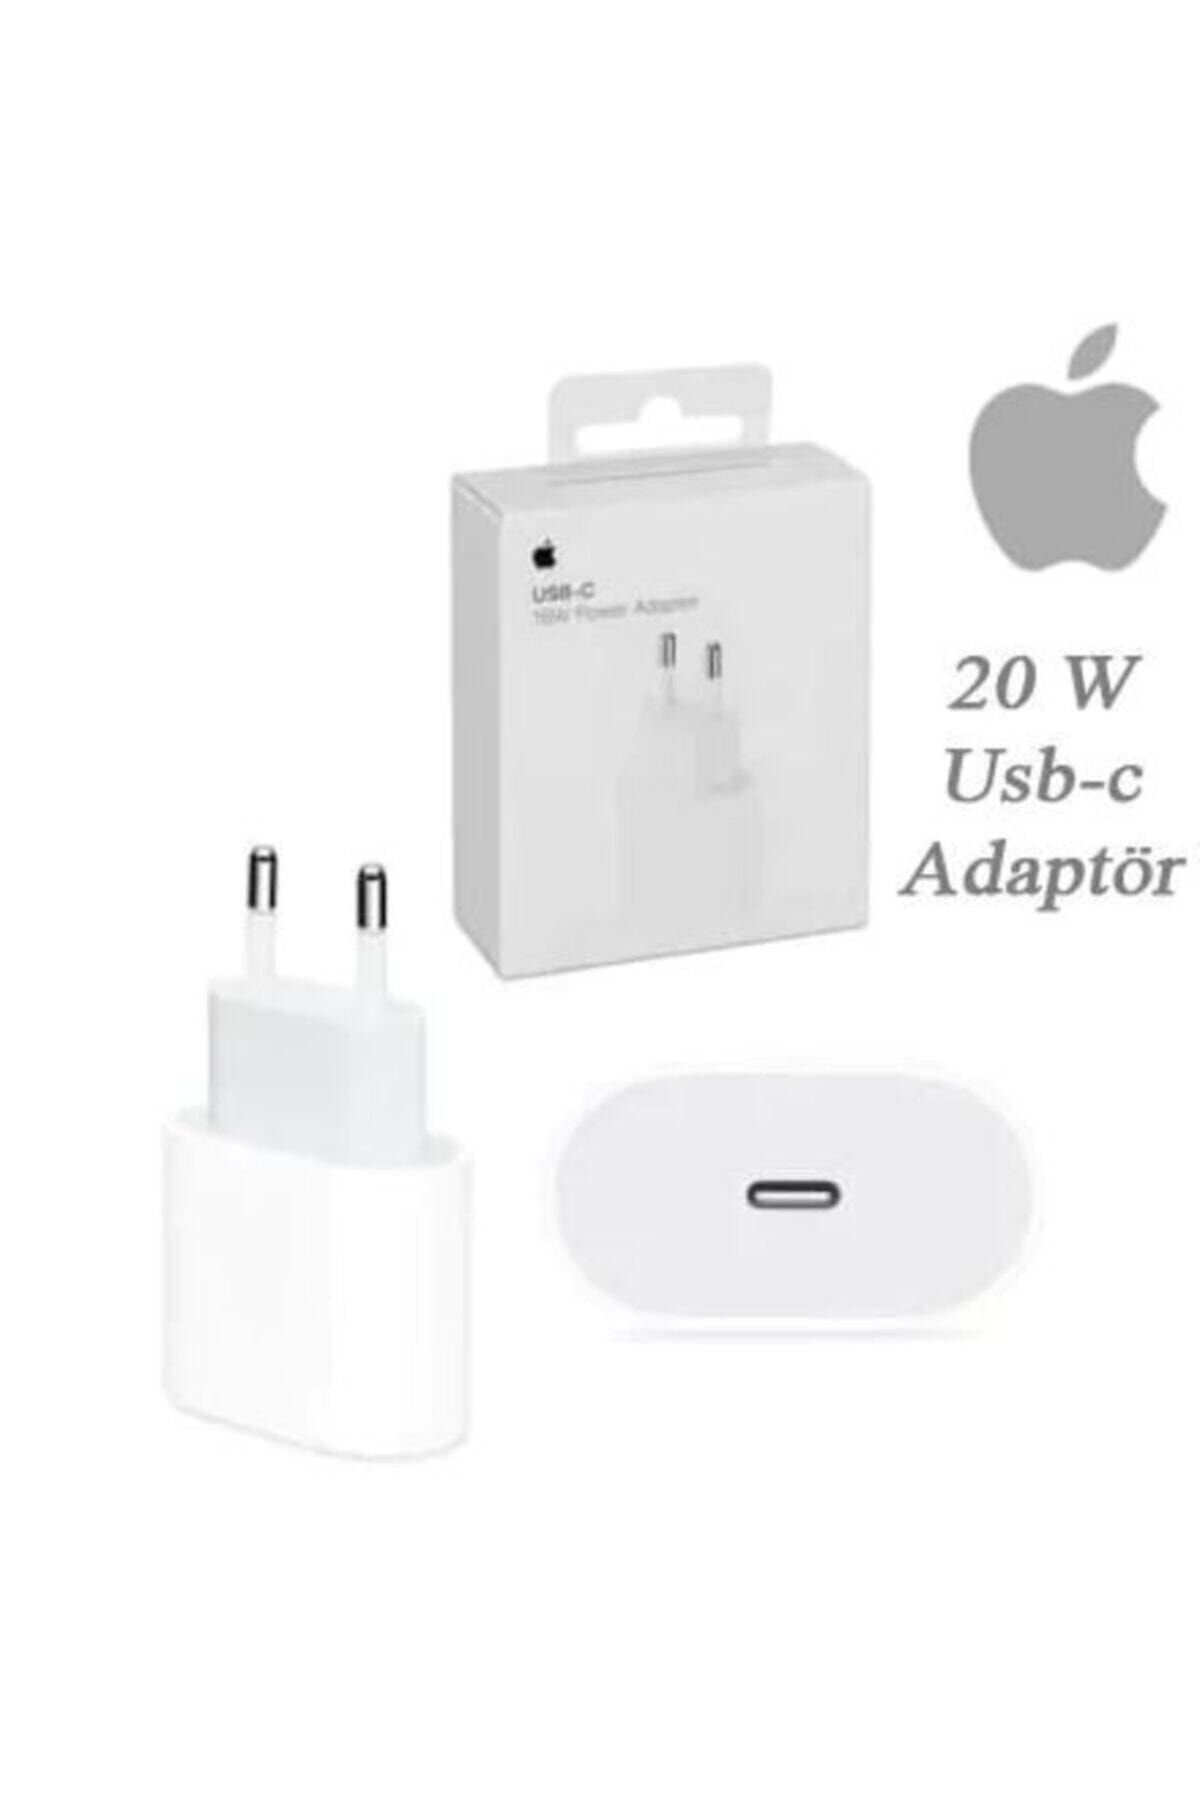 MY TECH Apple Iphone 20 W Usb-c Hızlı Şarj Adaptörü 11 /11 Pro Max 12/12 Pro Max Uyumlu